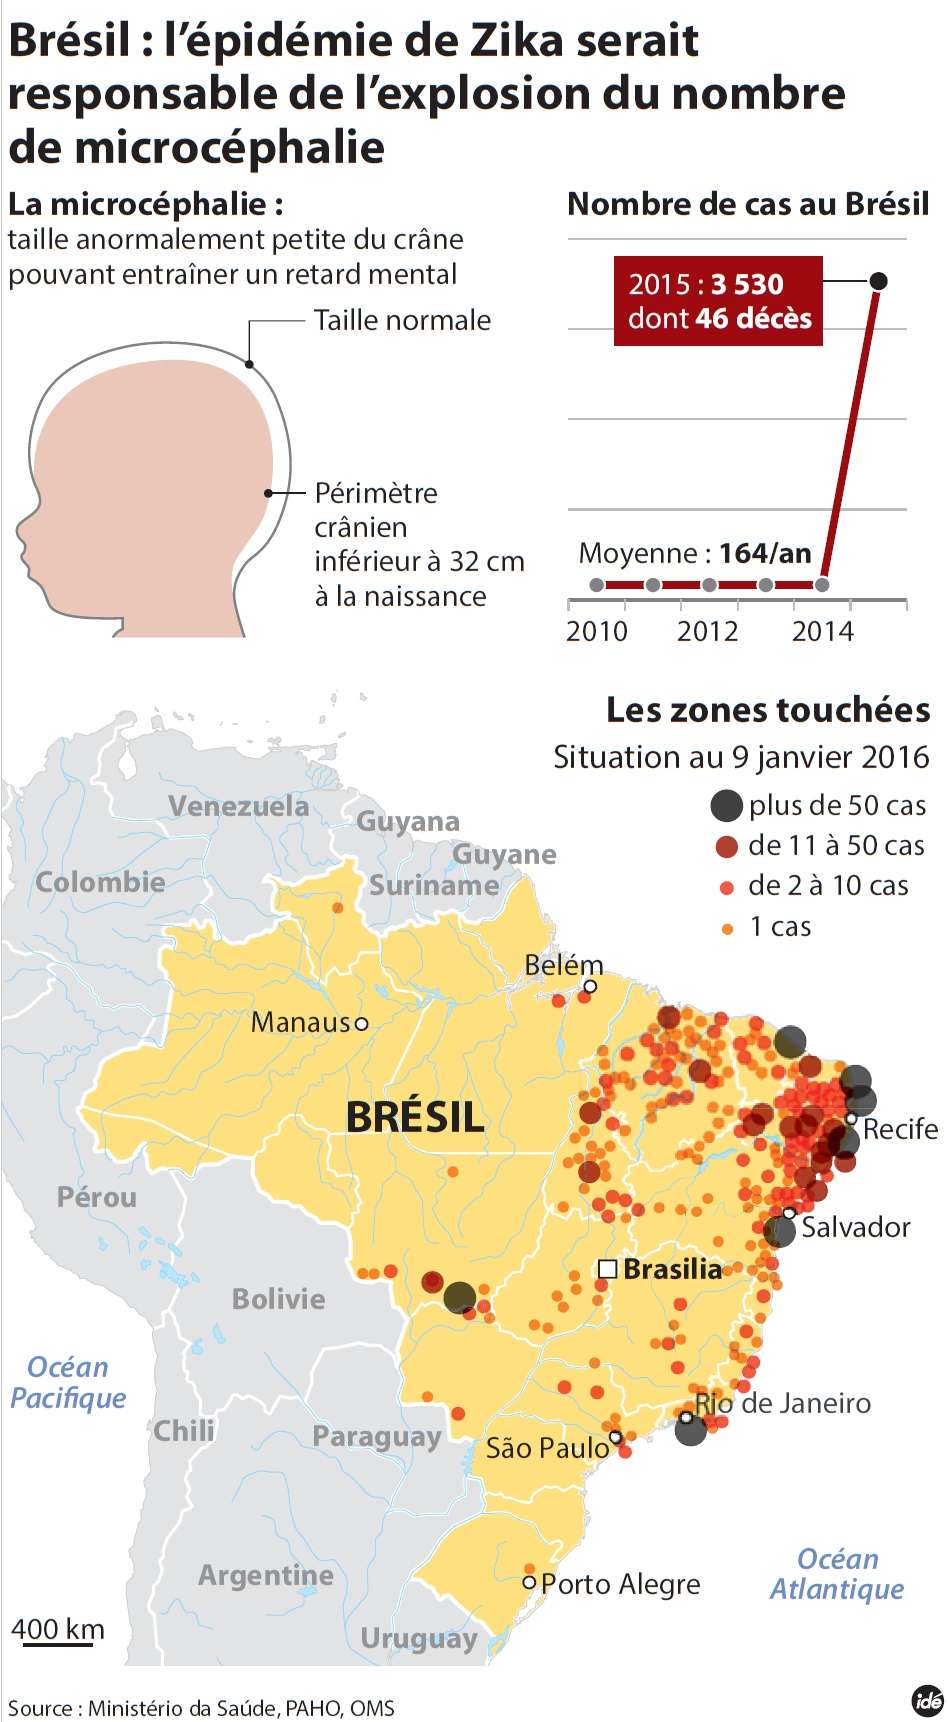 Au Brésil, alors que la microcéphalie touchait jusque-là 164 enfants par an en moyenne, le nombre de cas a grimpé à 3.530 en 2015. © Idé